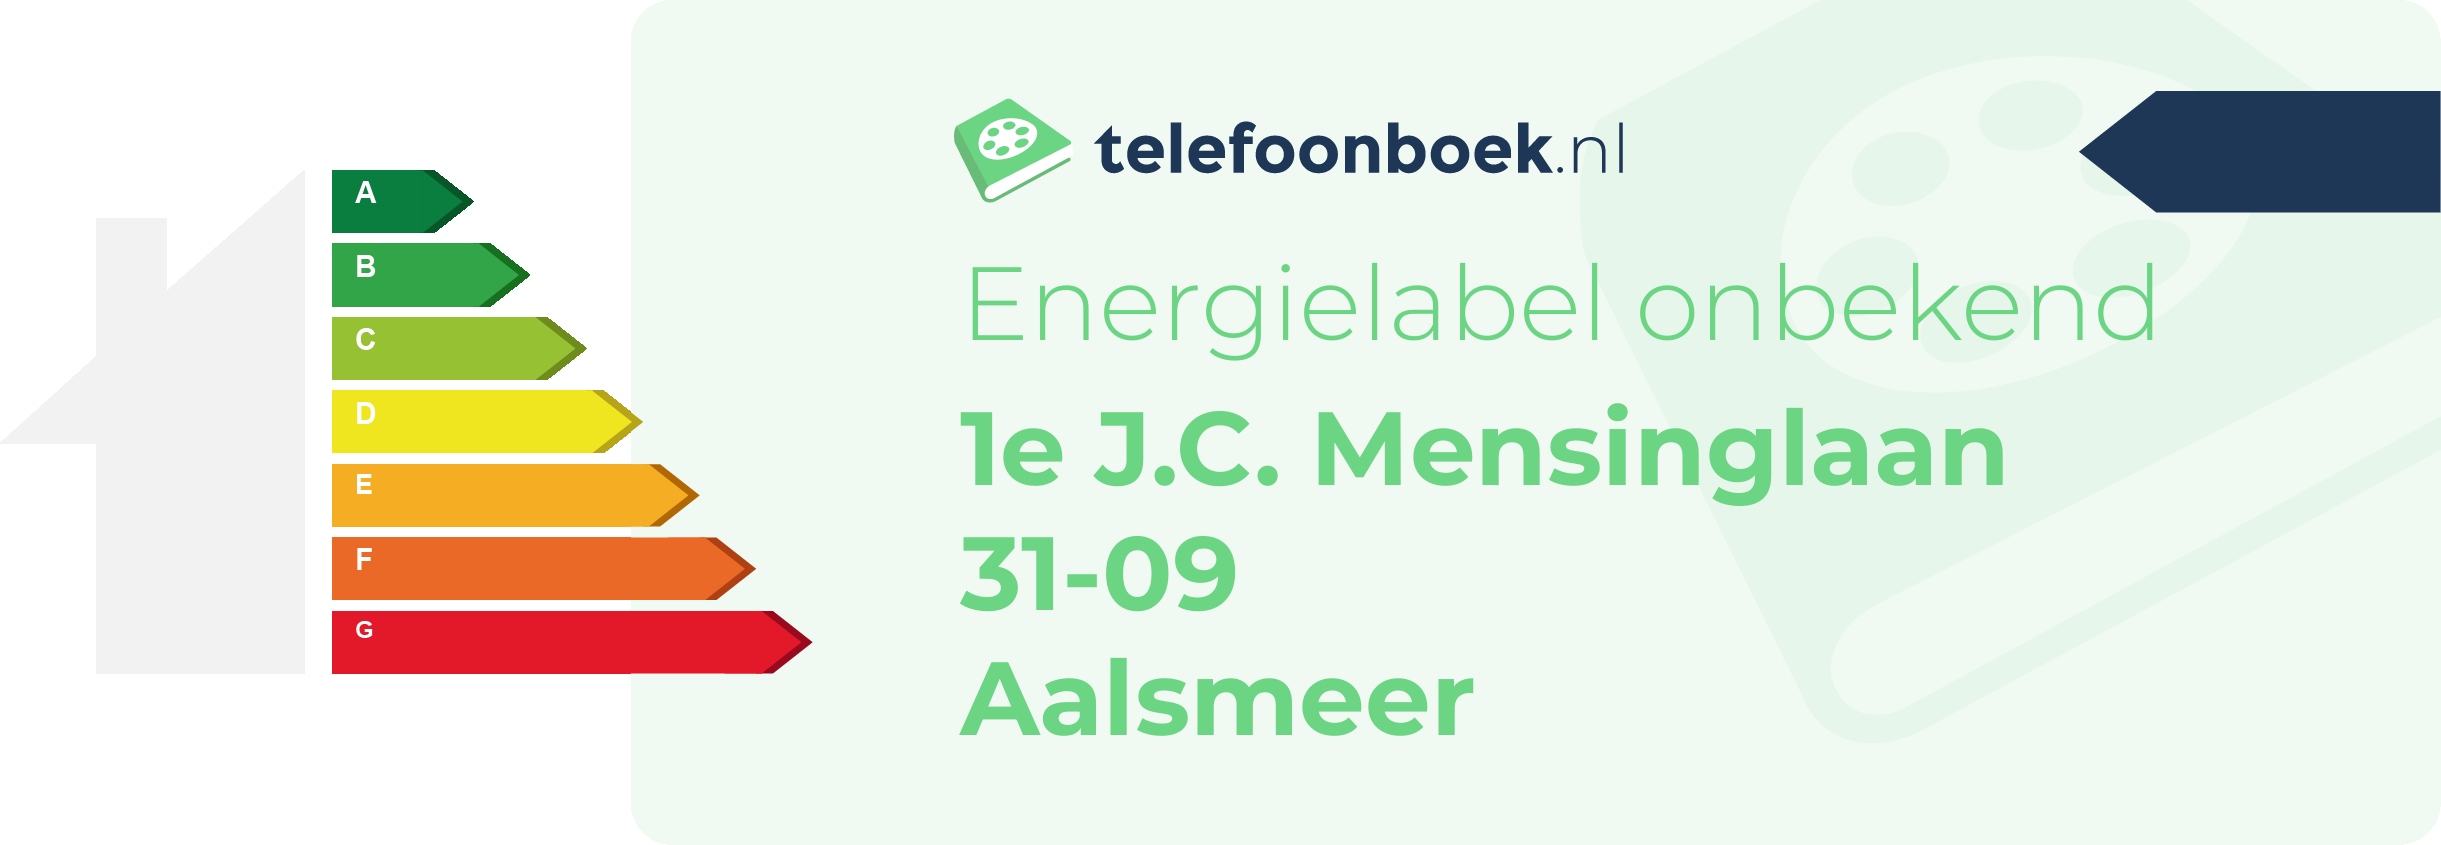 Energielabel 1e J.C. Mensinglaan 31-09 Aalsmeer